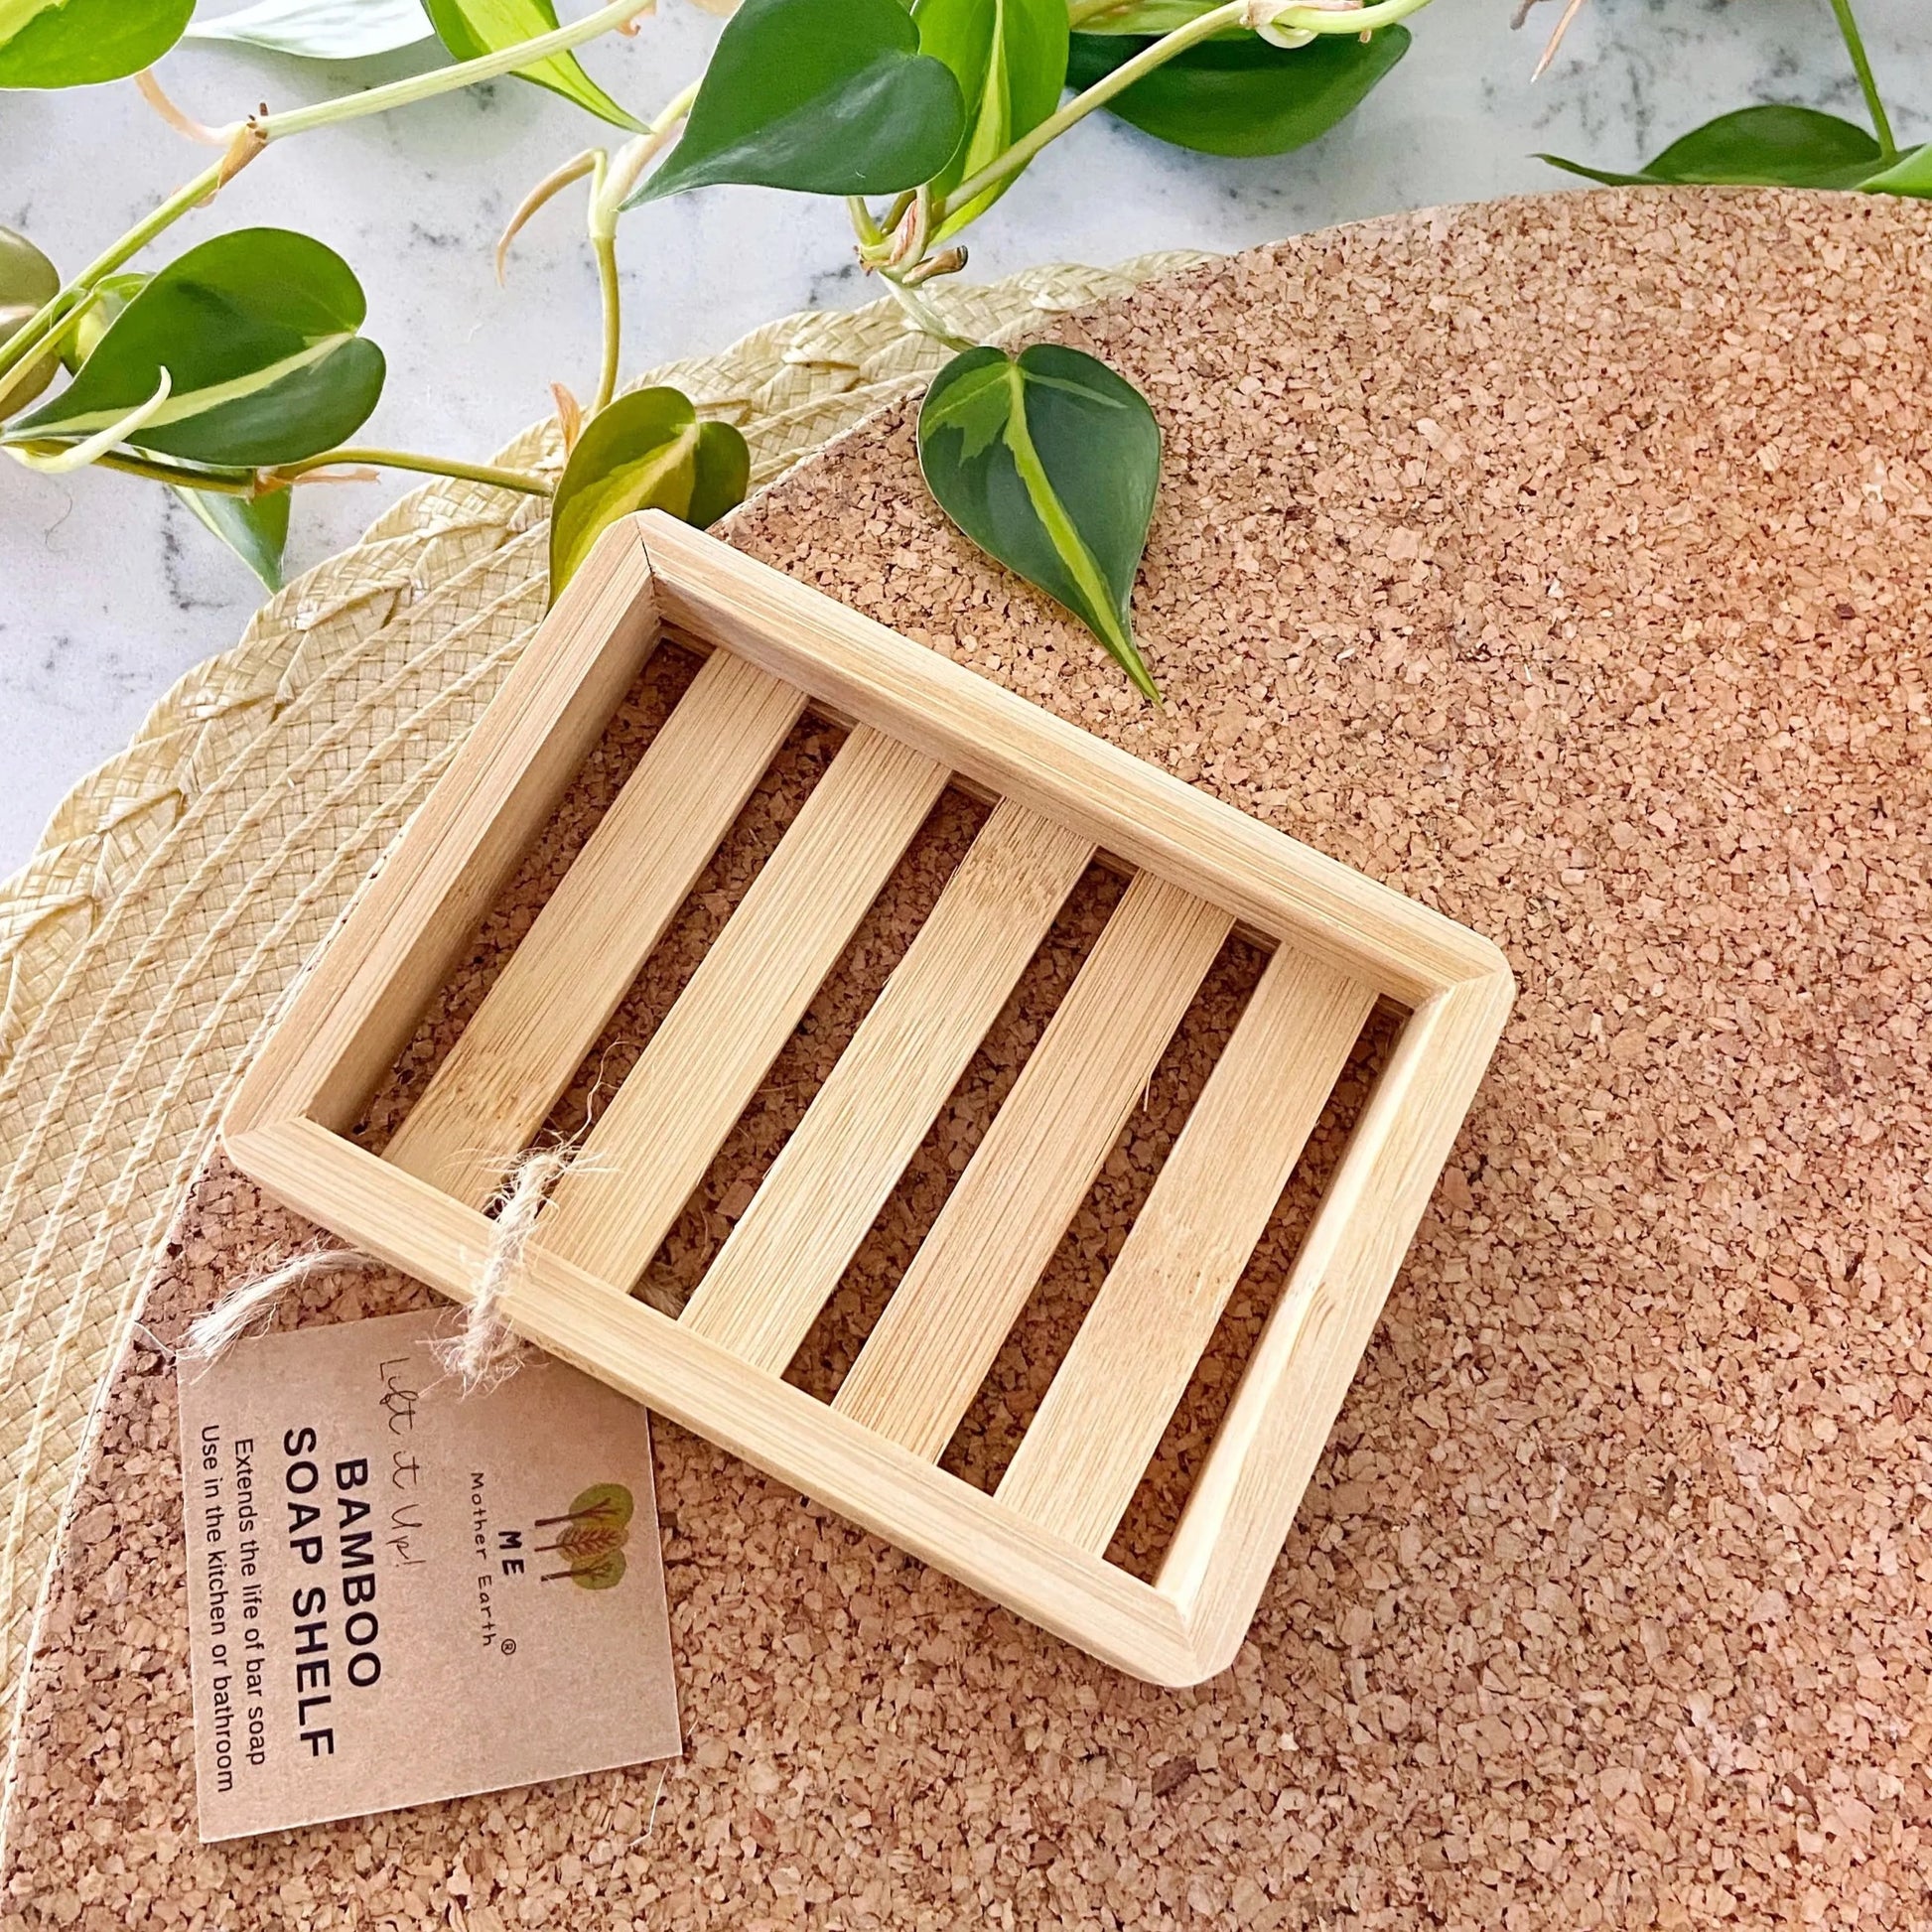 Bamboo soap tray. Sustainable